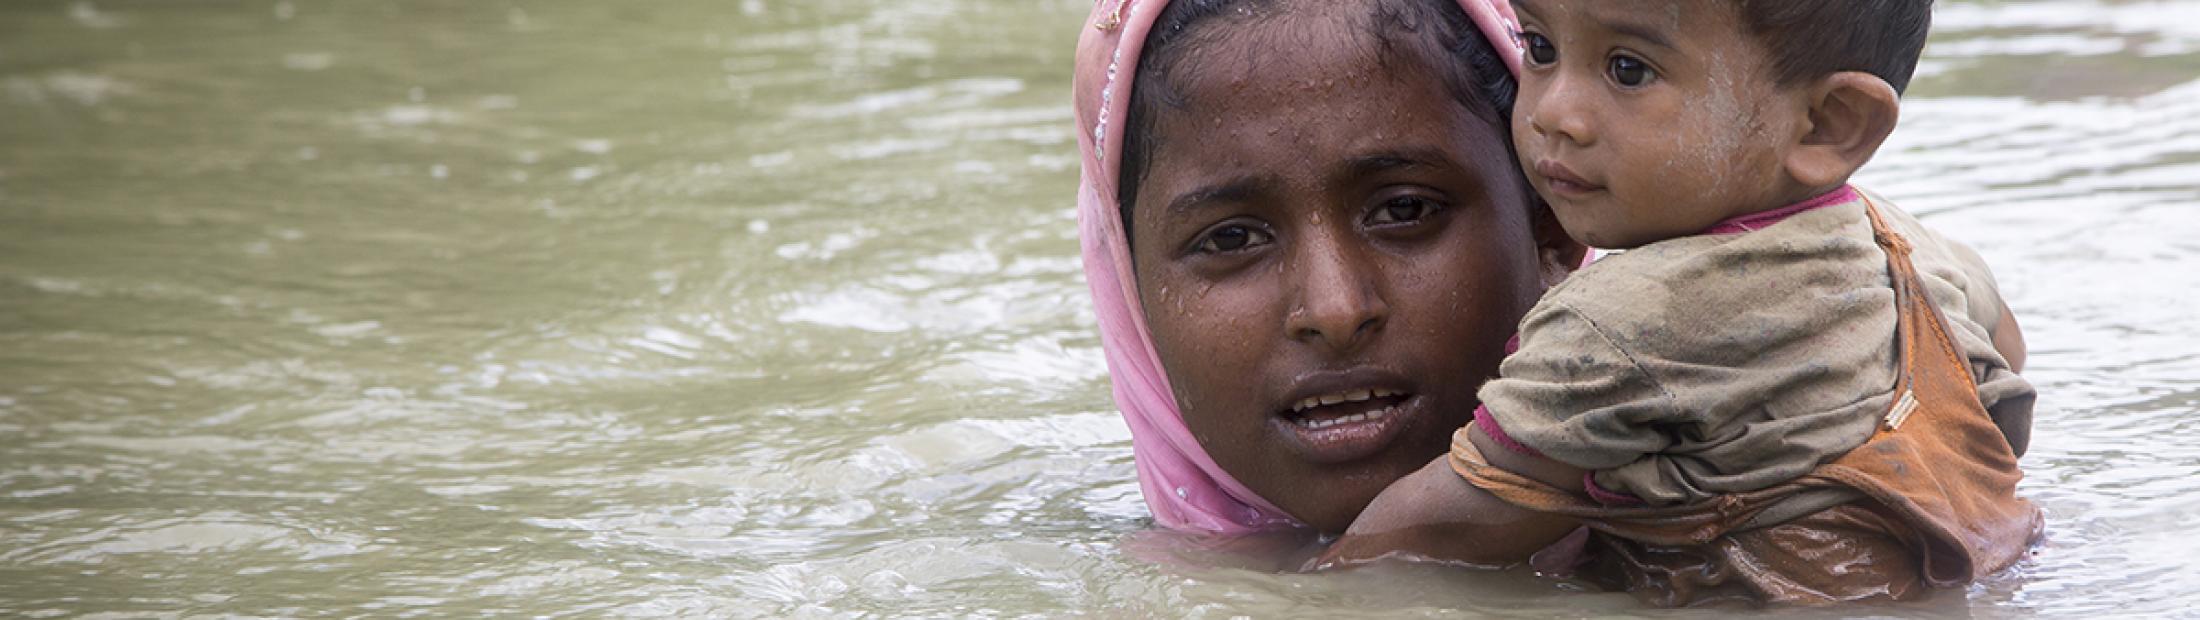 Más de 900.000 rohingya viven en Bangladesh